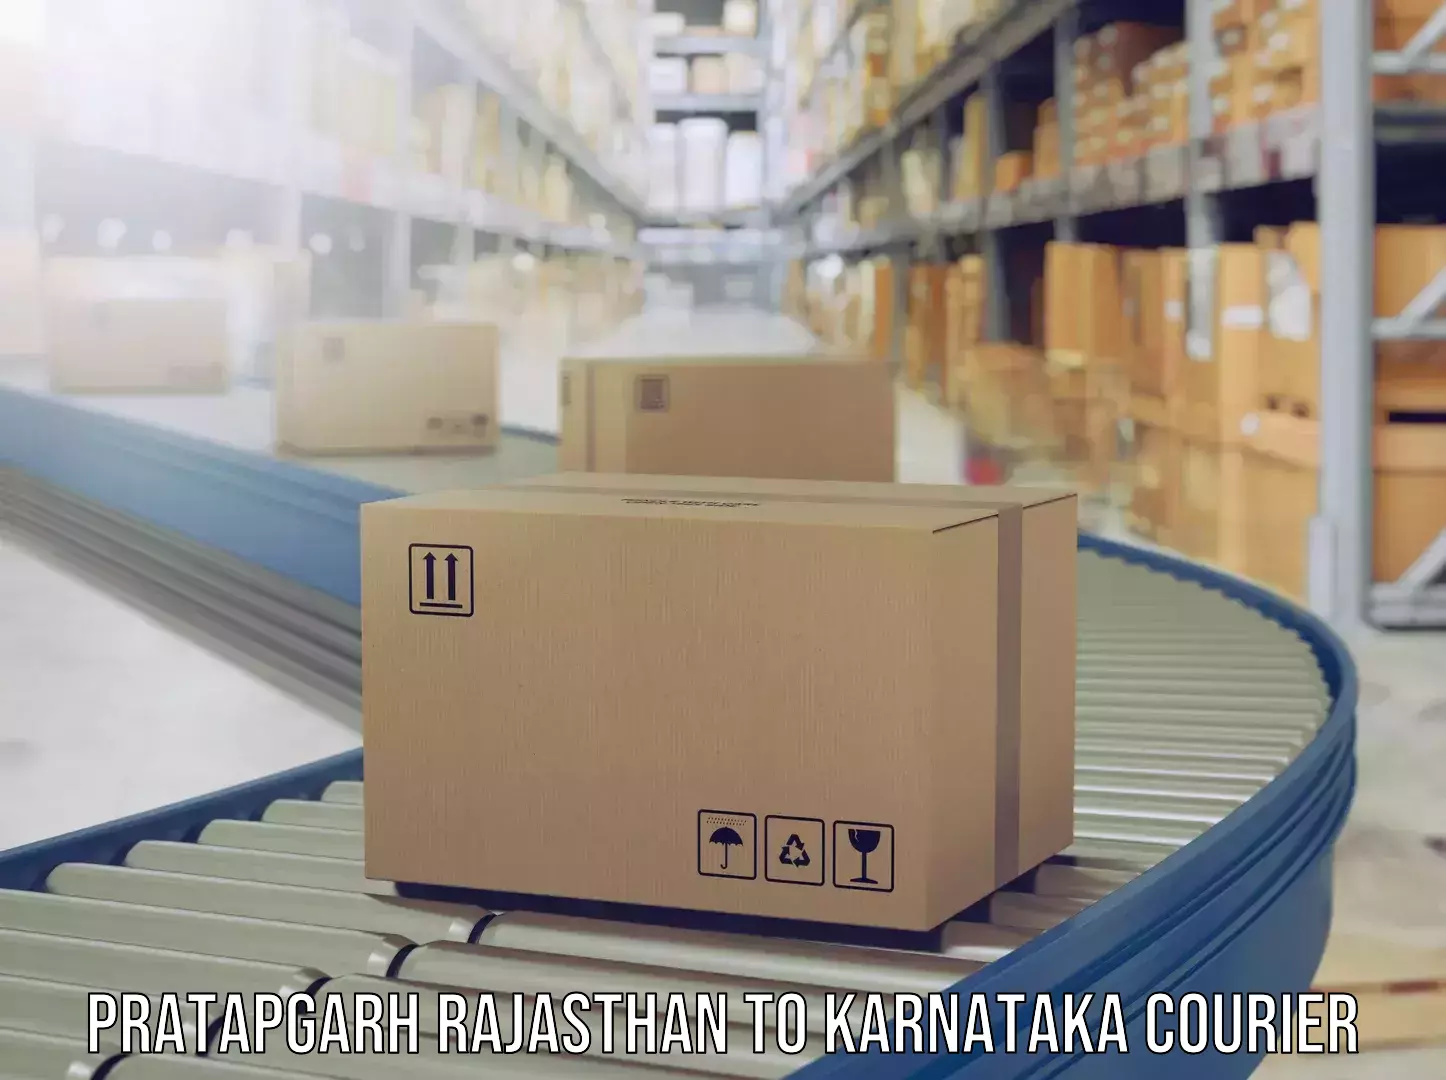 Luggage shipment processing Pratapgarh Rajasthan to Chikkamagaluru